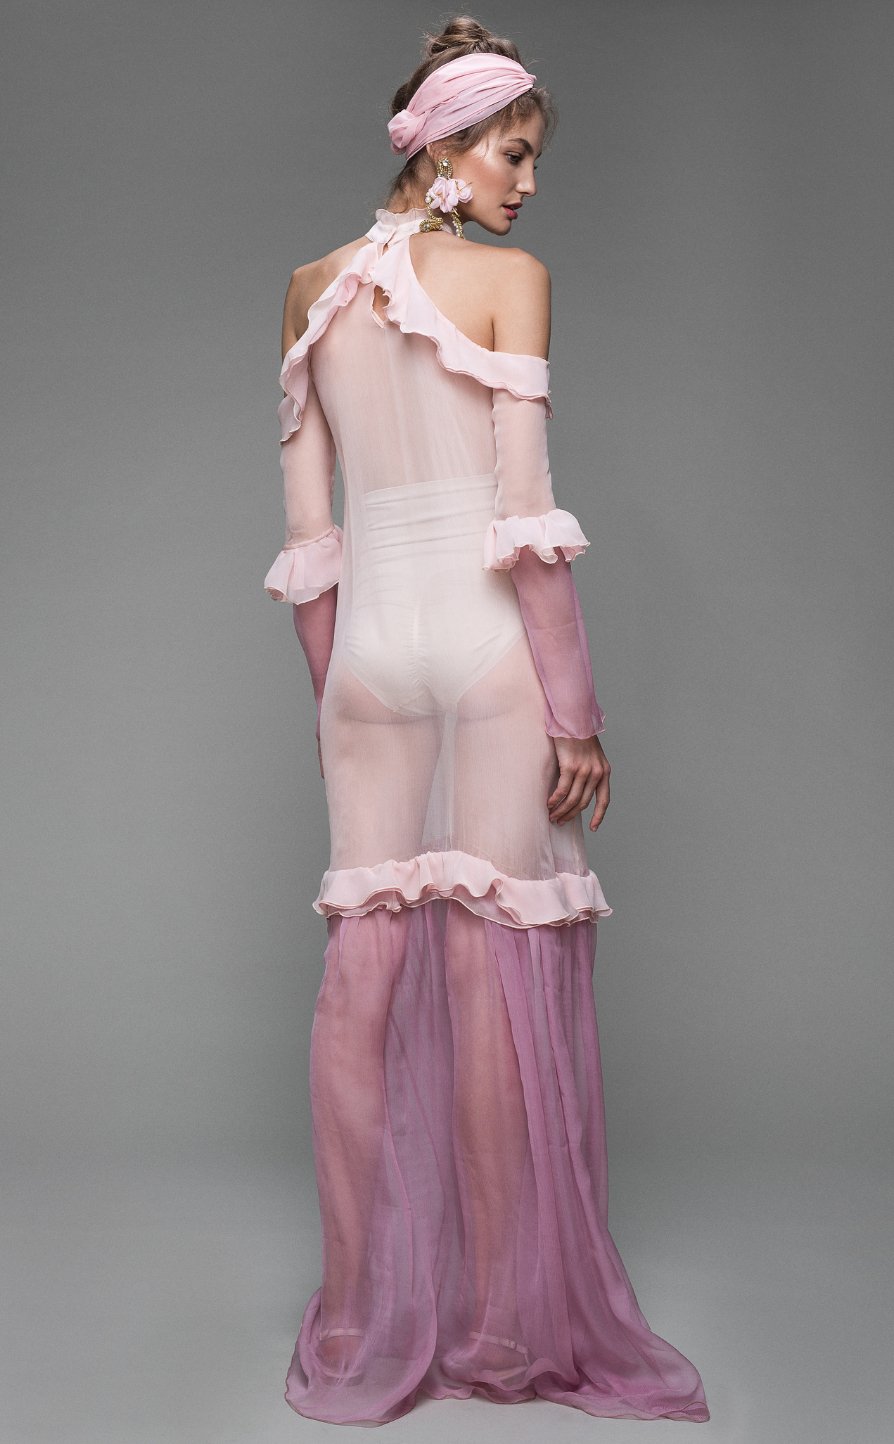 Silk chiffon sheer dress - LOULOU